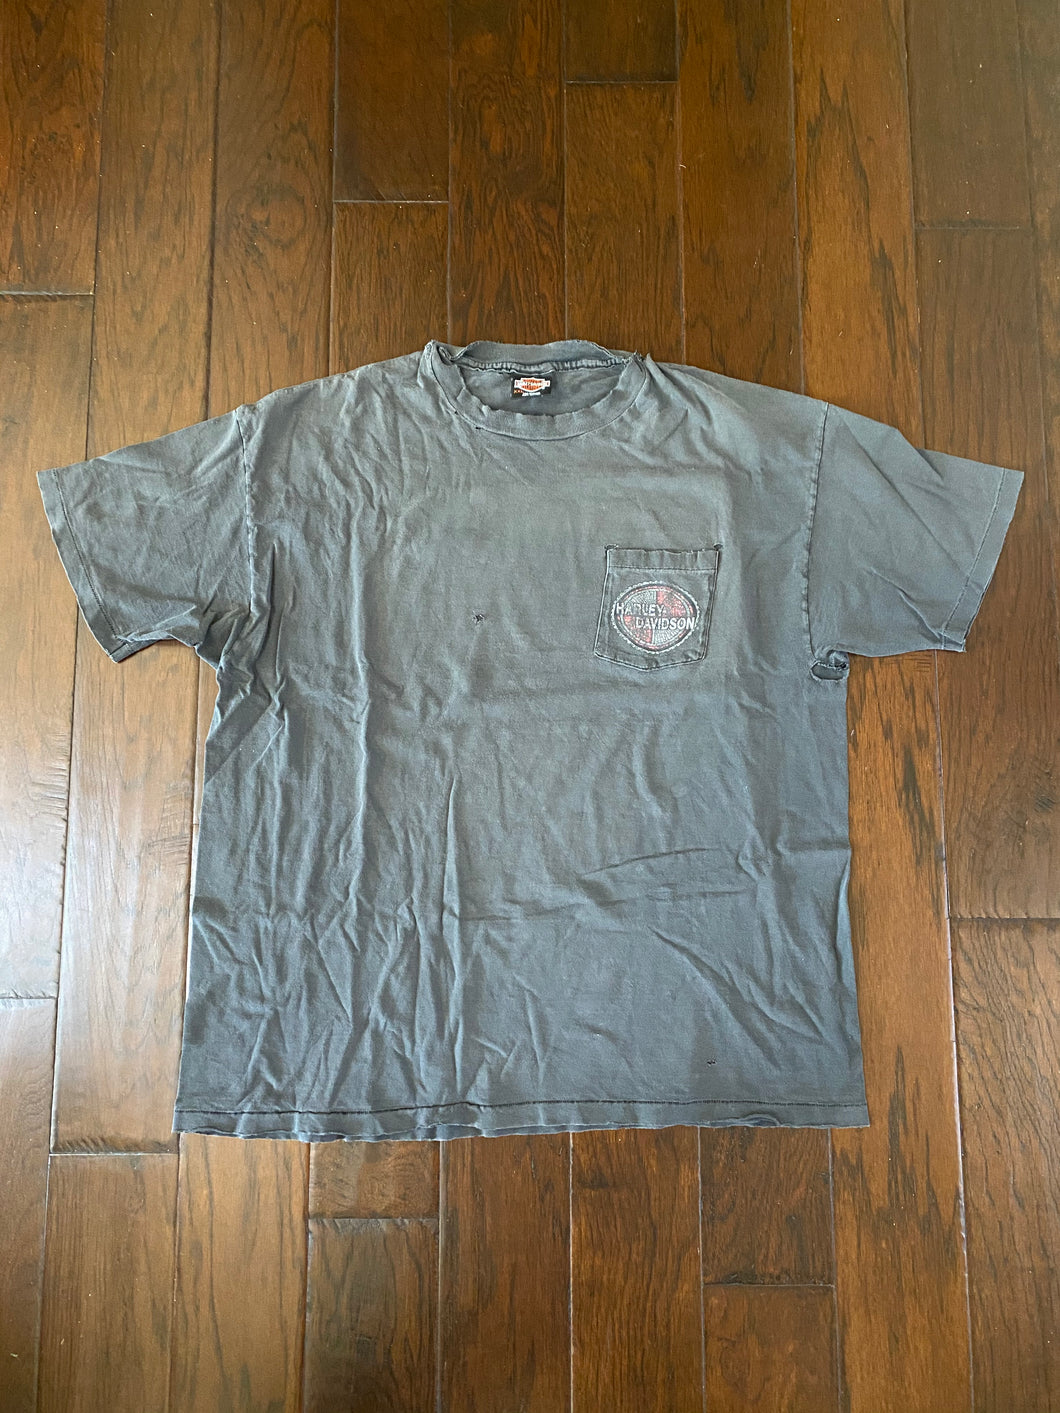 Harley-Davidson 1990’s “Ft. Lauderdale, Florida” Vintage Distressed Pocket T-shirt